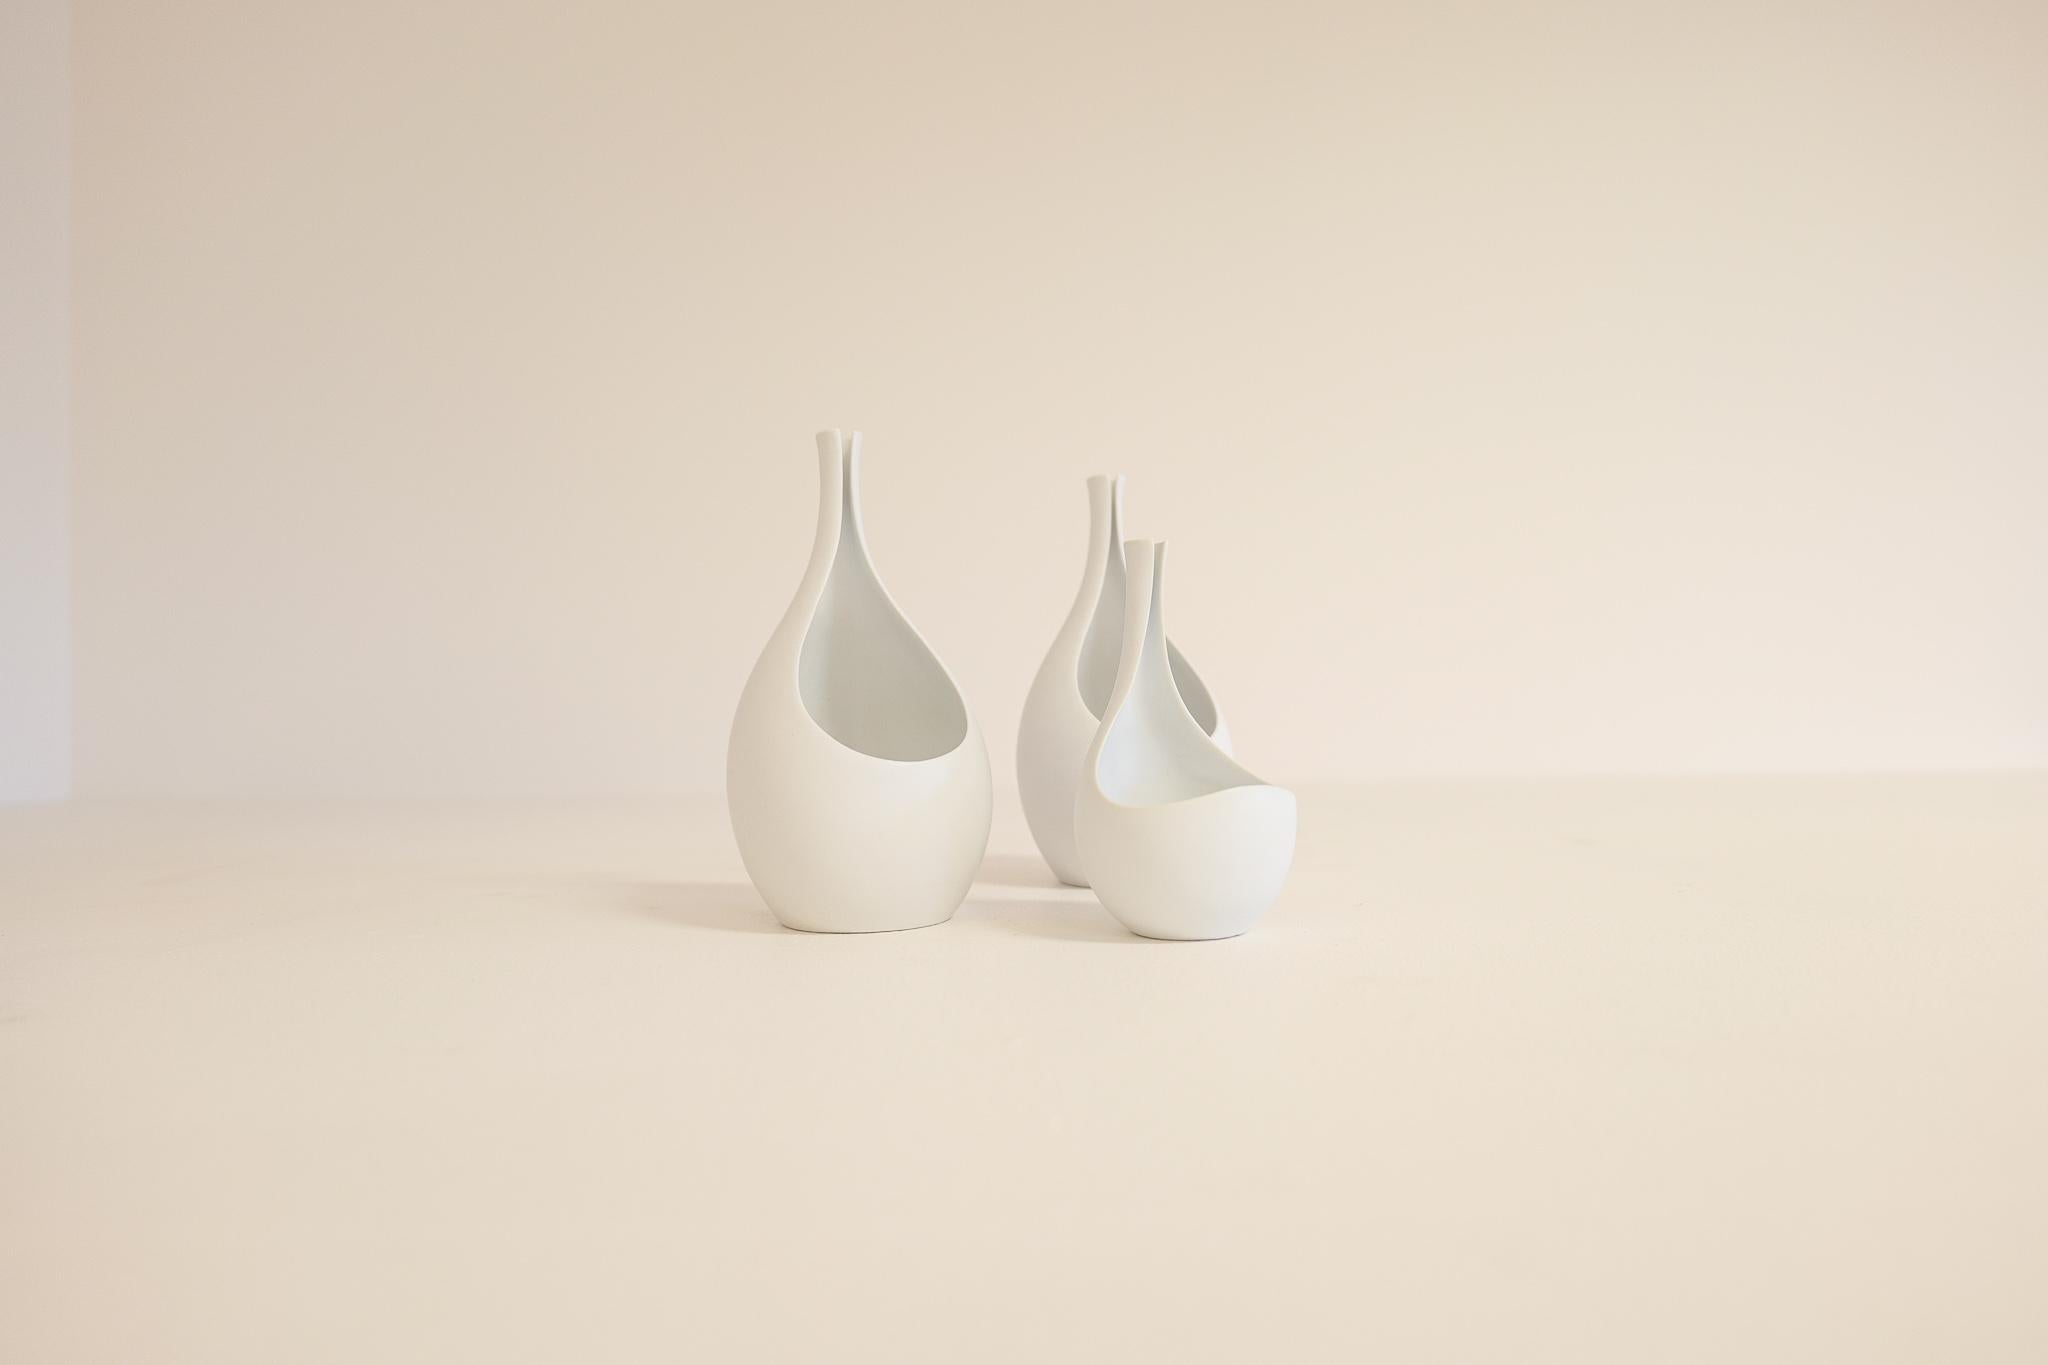 Le vase pungo fabriqué en Suède dans les années 1950 par le maître Stig Lindberg pour Gustavsberg. Le vase pungo a la plus belle forme et avec sa glaçure blanche mate, c'est une pièce pour de nombreux environnements. Voici une collection de deux